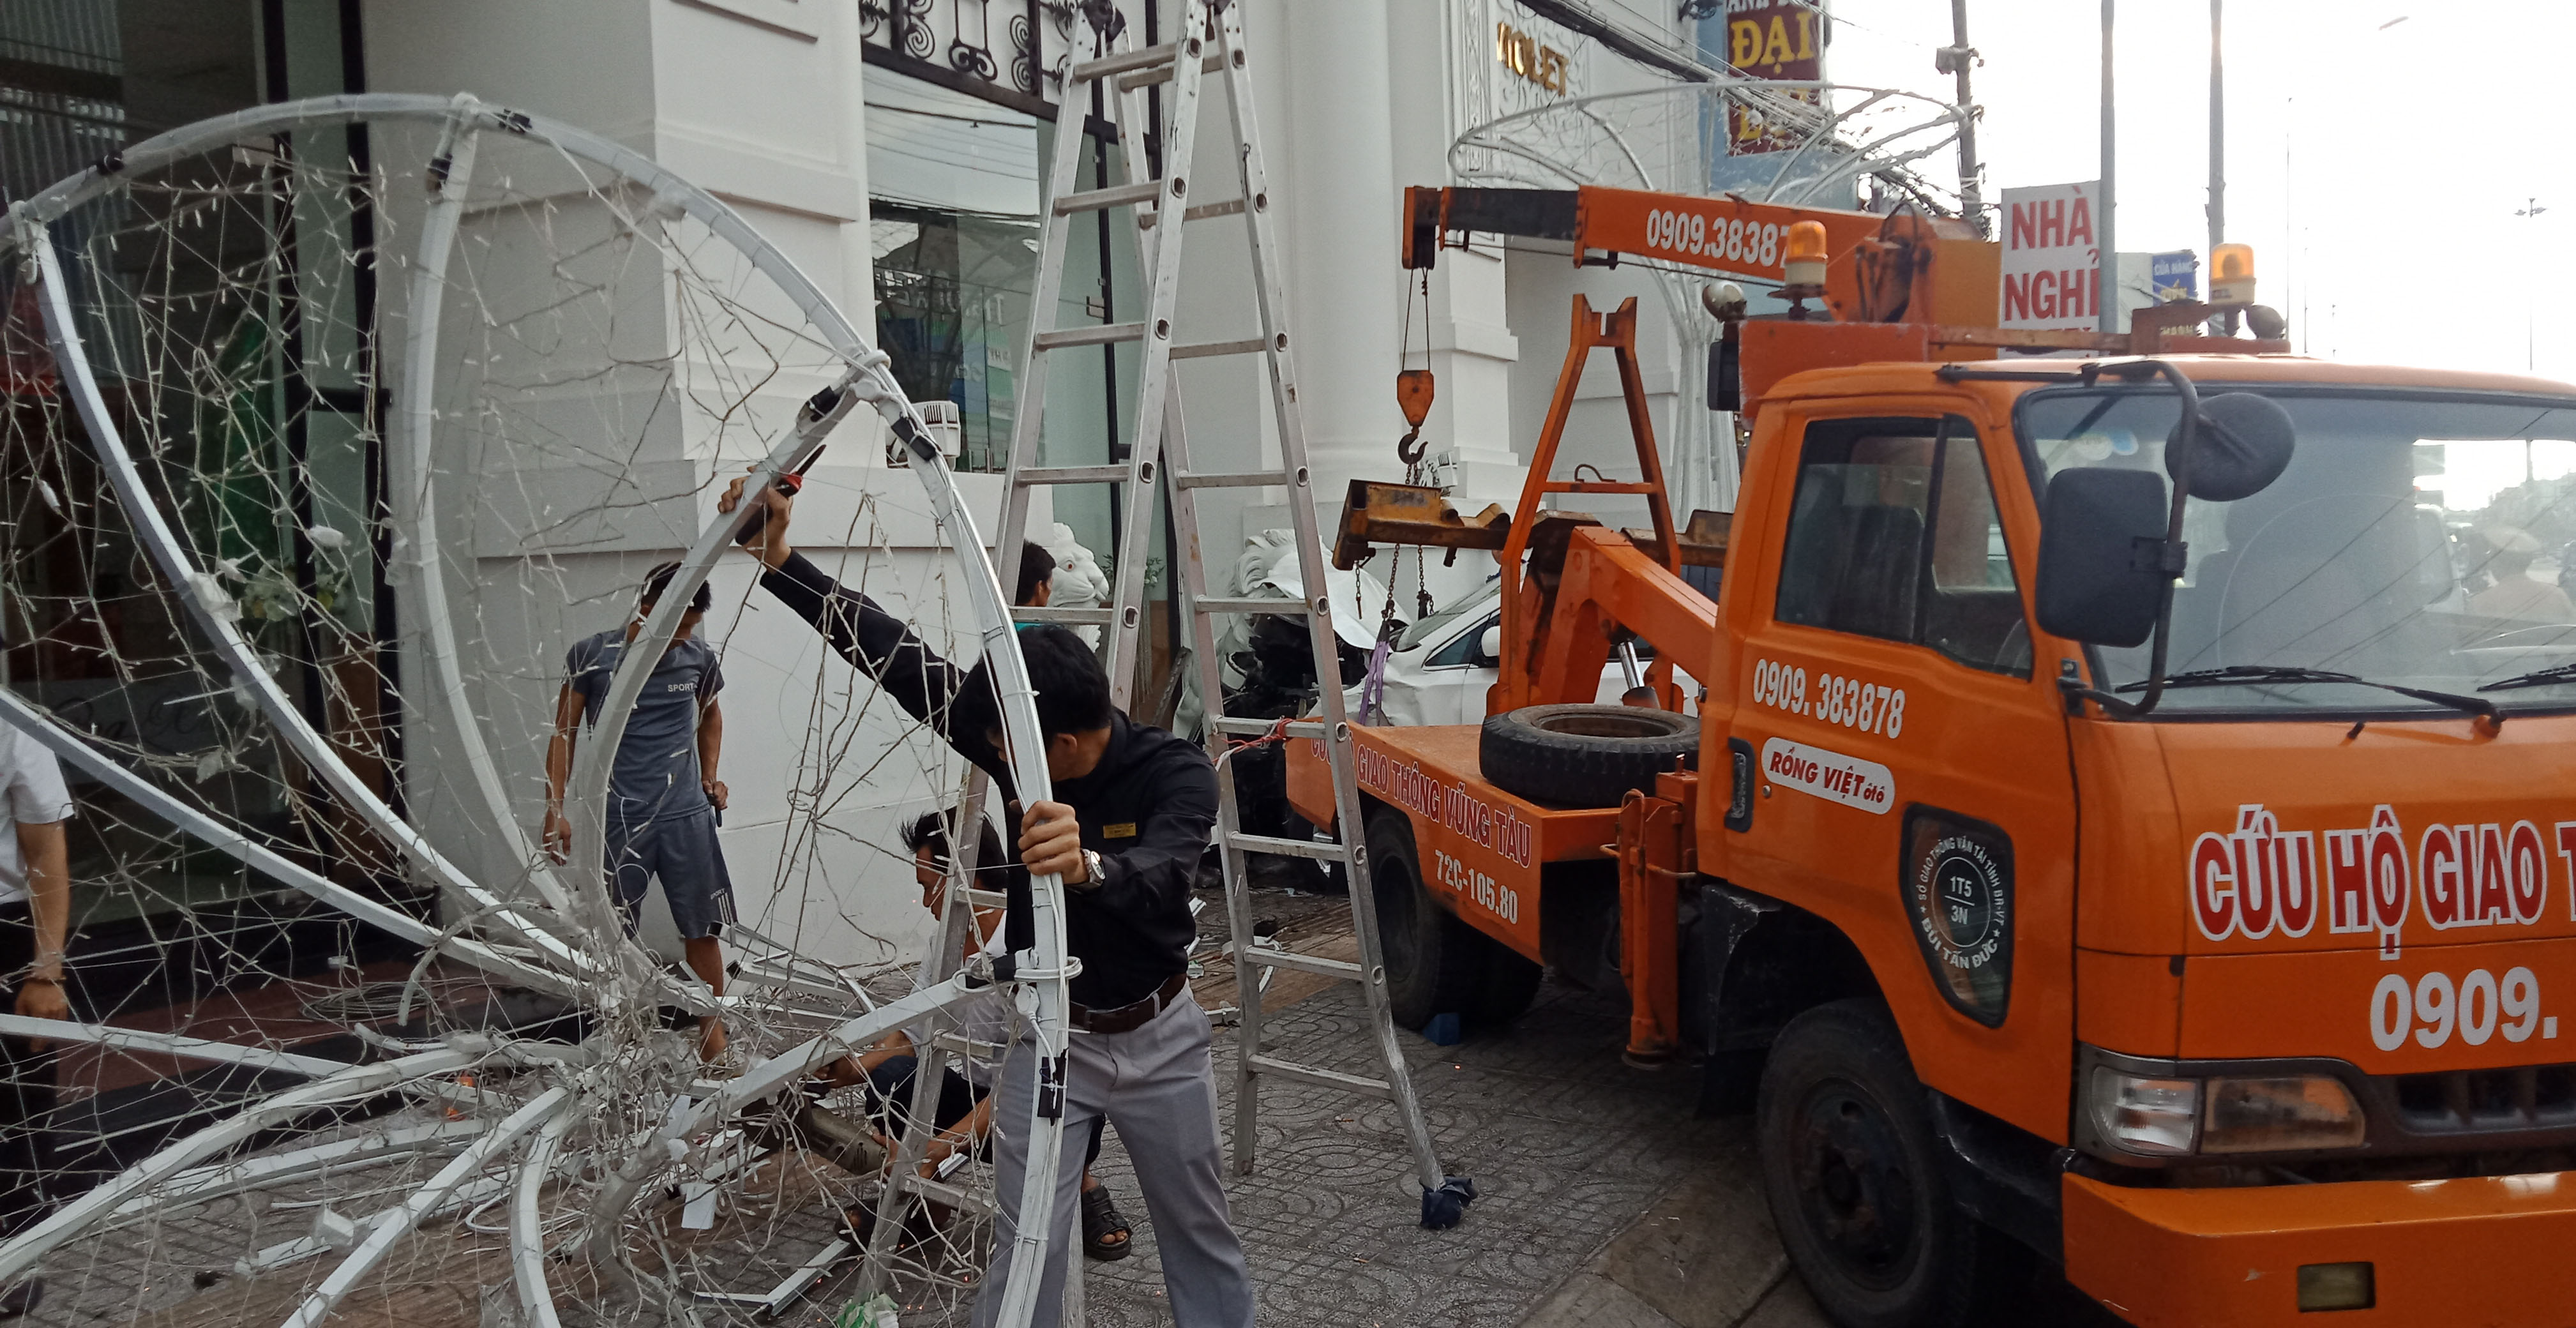 Một cột đèn trang trí nhà hàng Đông Xuyên bị tông sập.